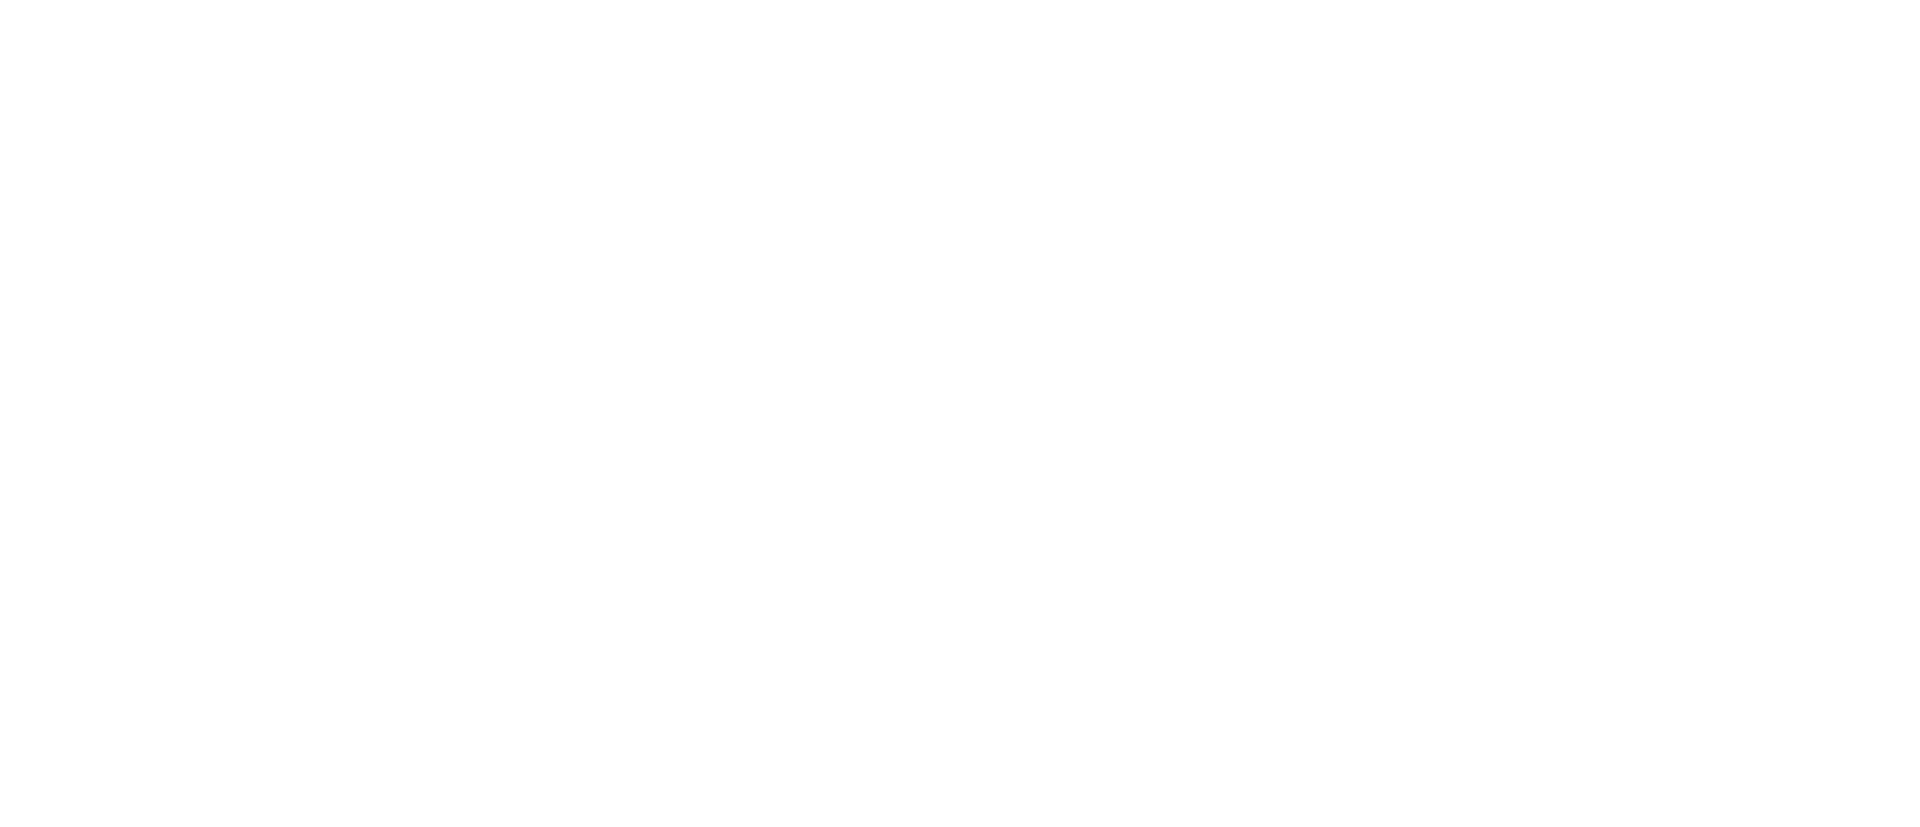 a street map